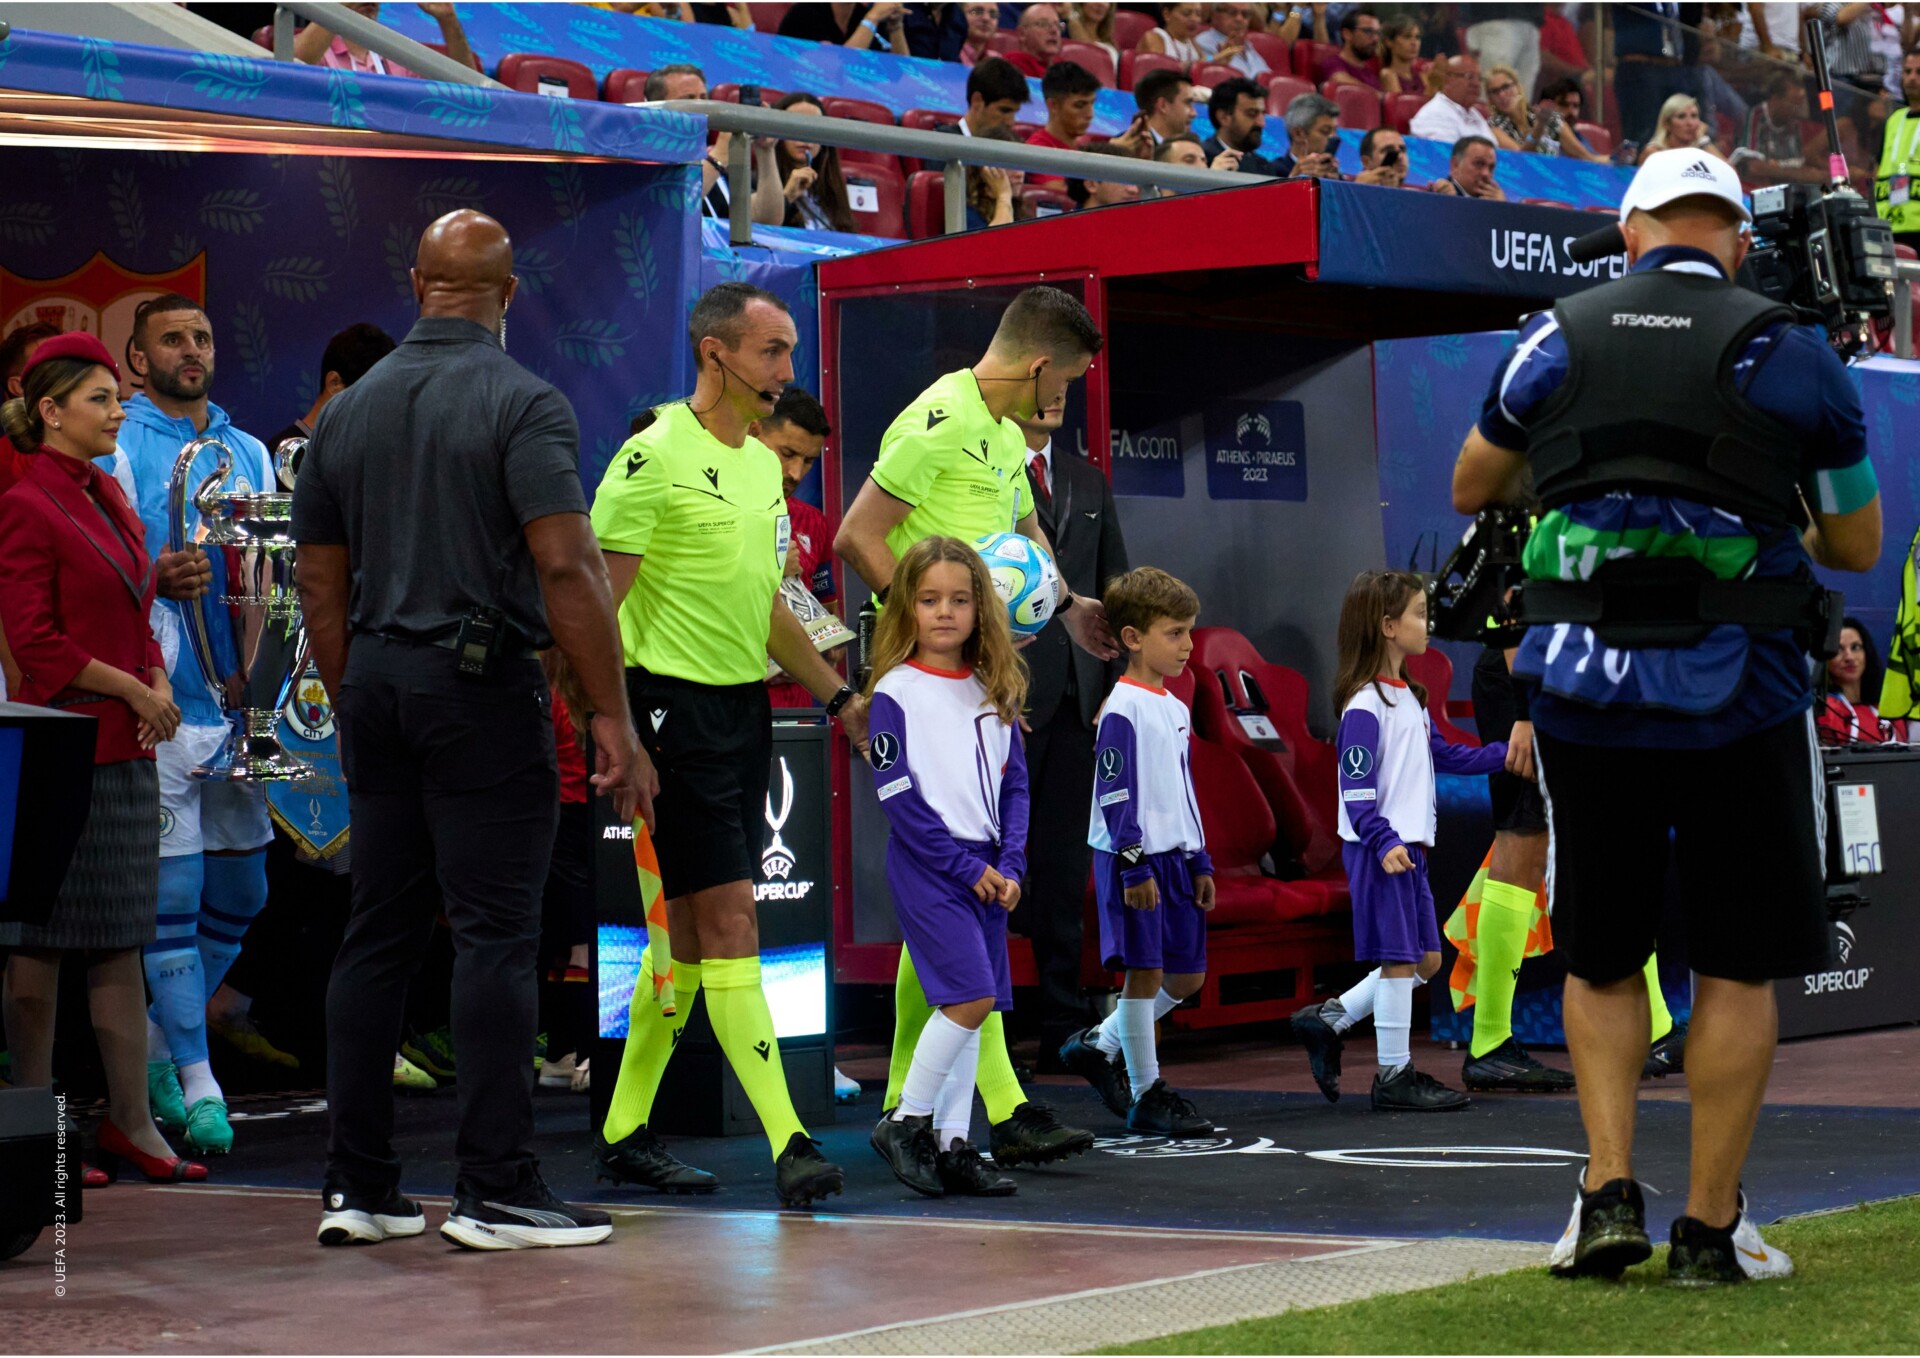 Η FedEx Express προσέφερε UEFA Super Cup εμπειρία σε παιδιά © ΔΤ